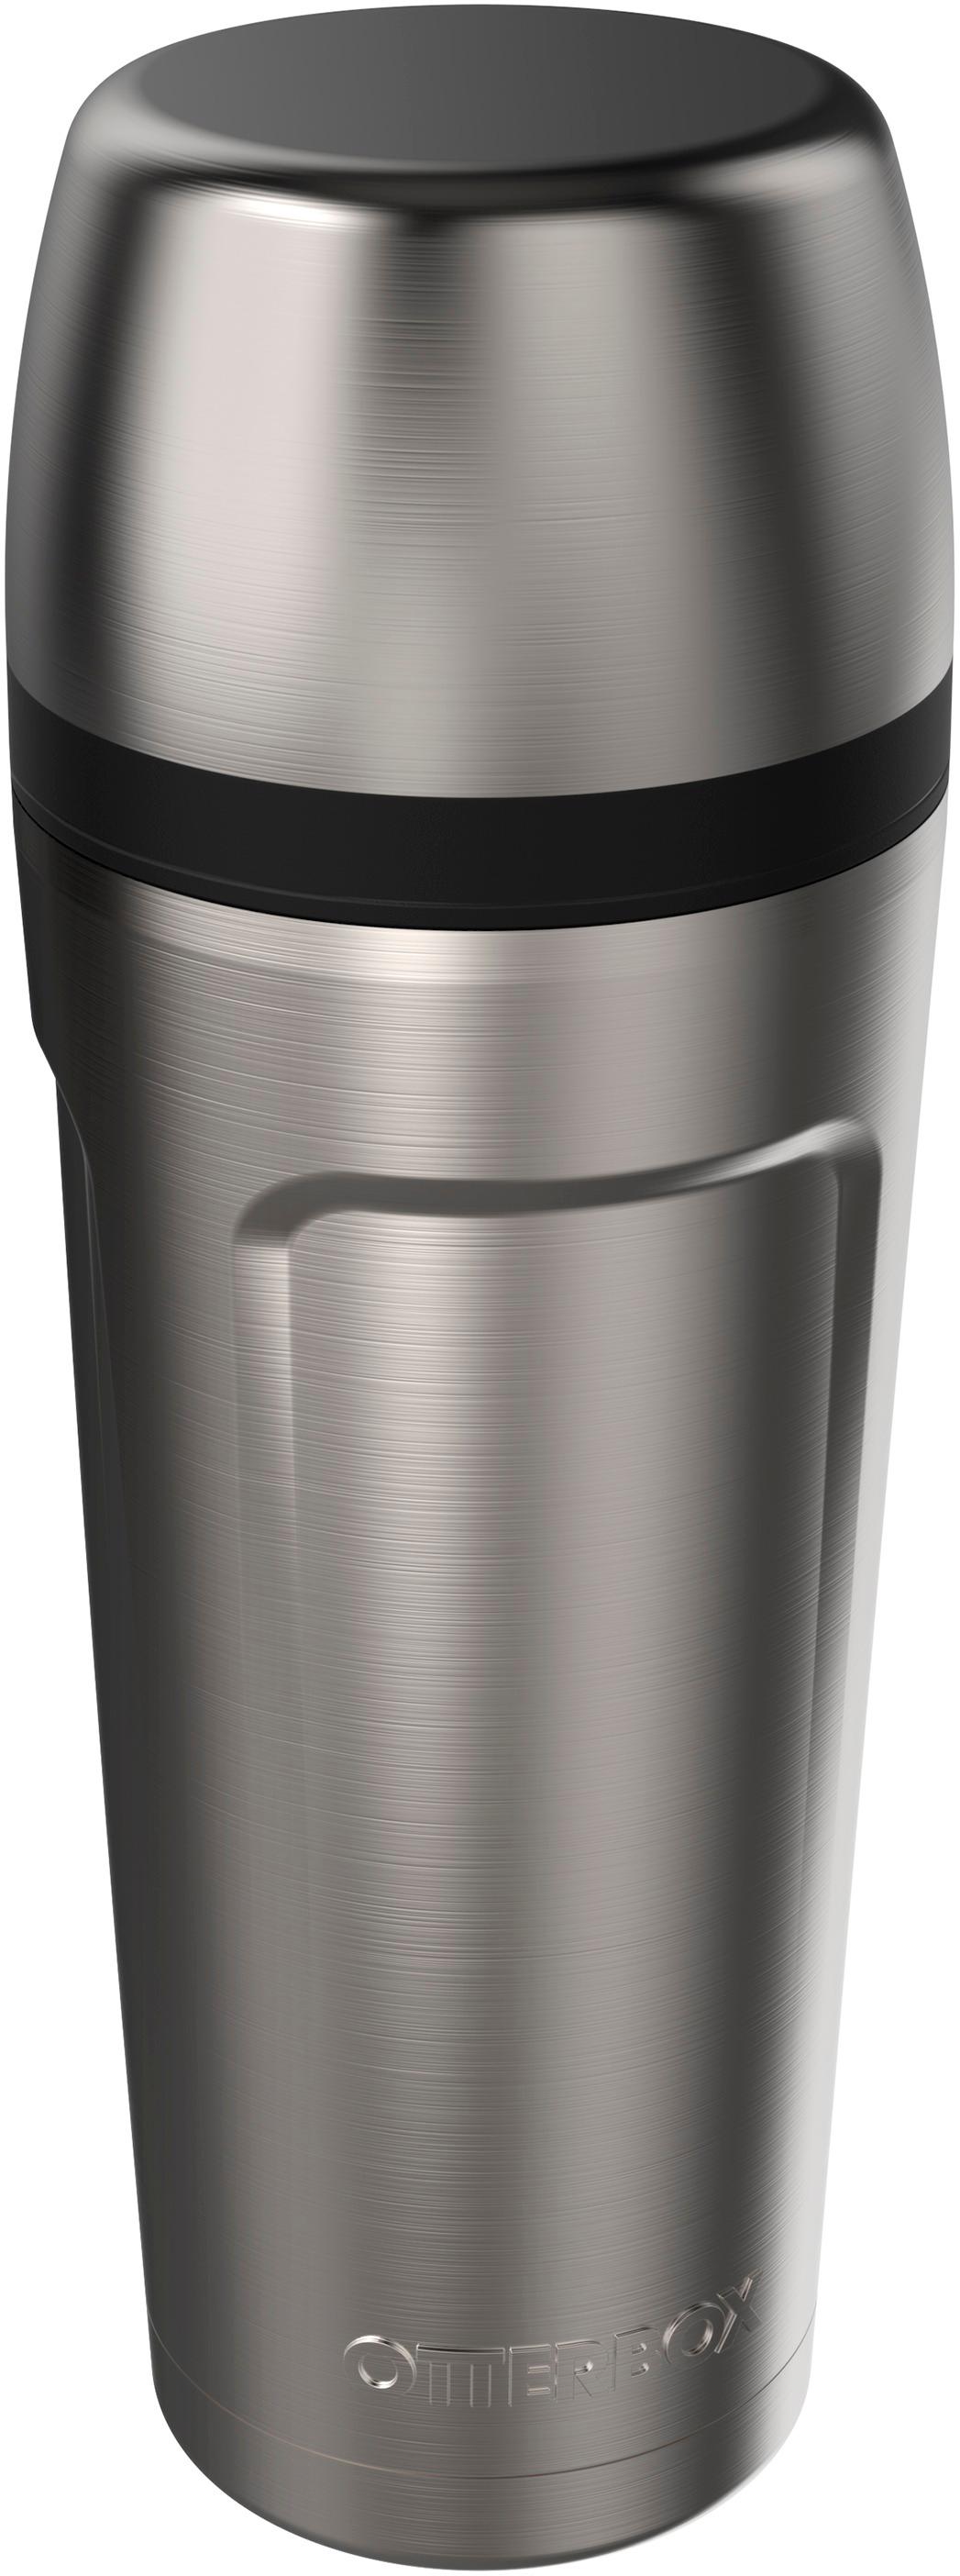 Keurig® 12oz Insulated Travel Mug